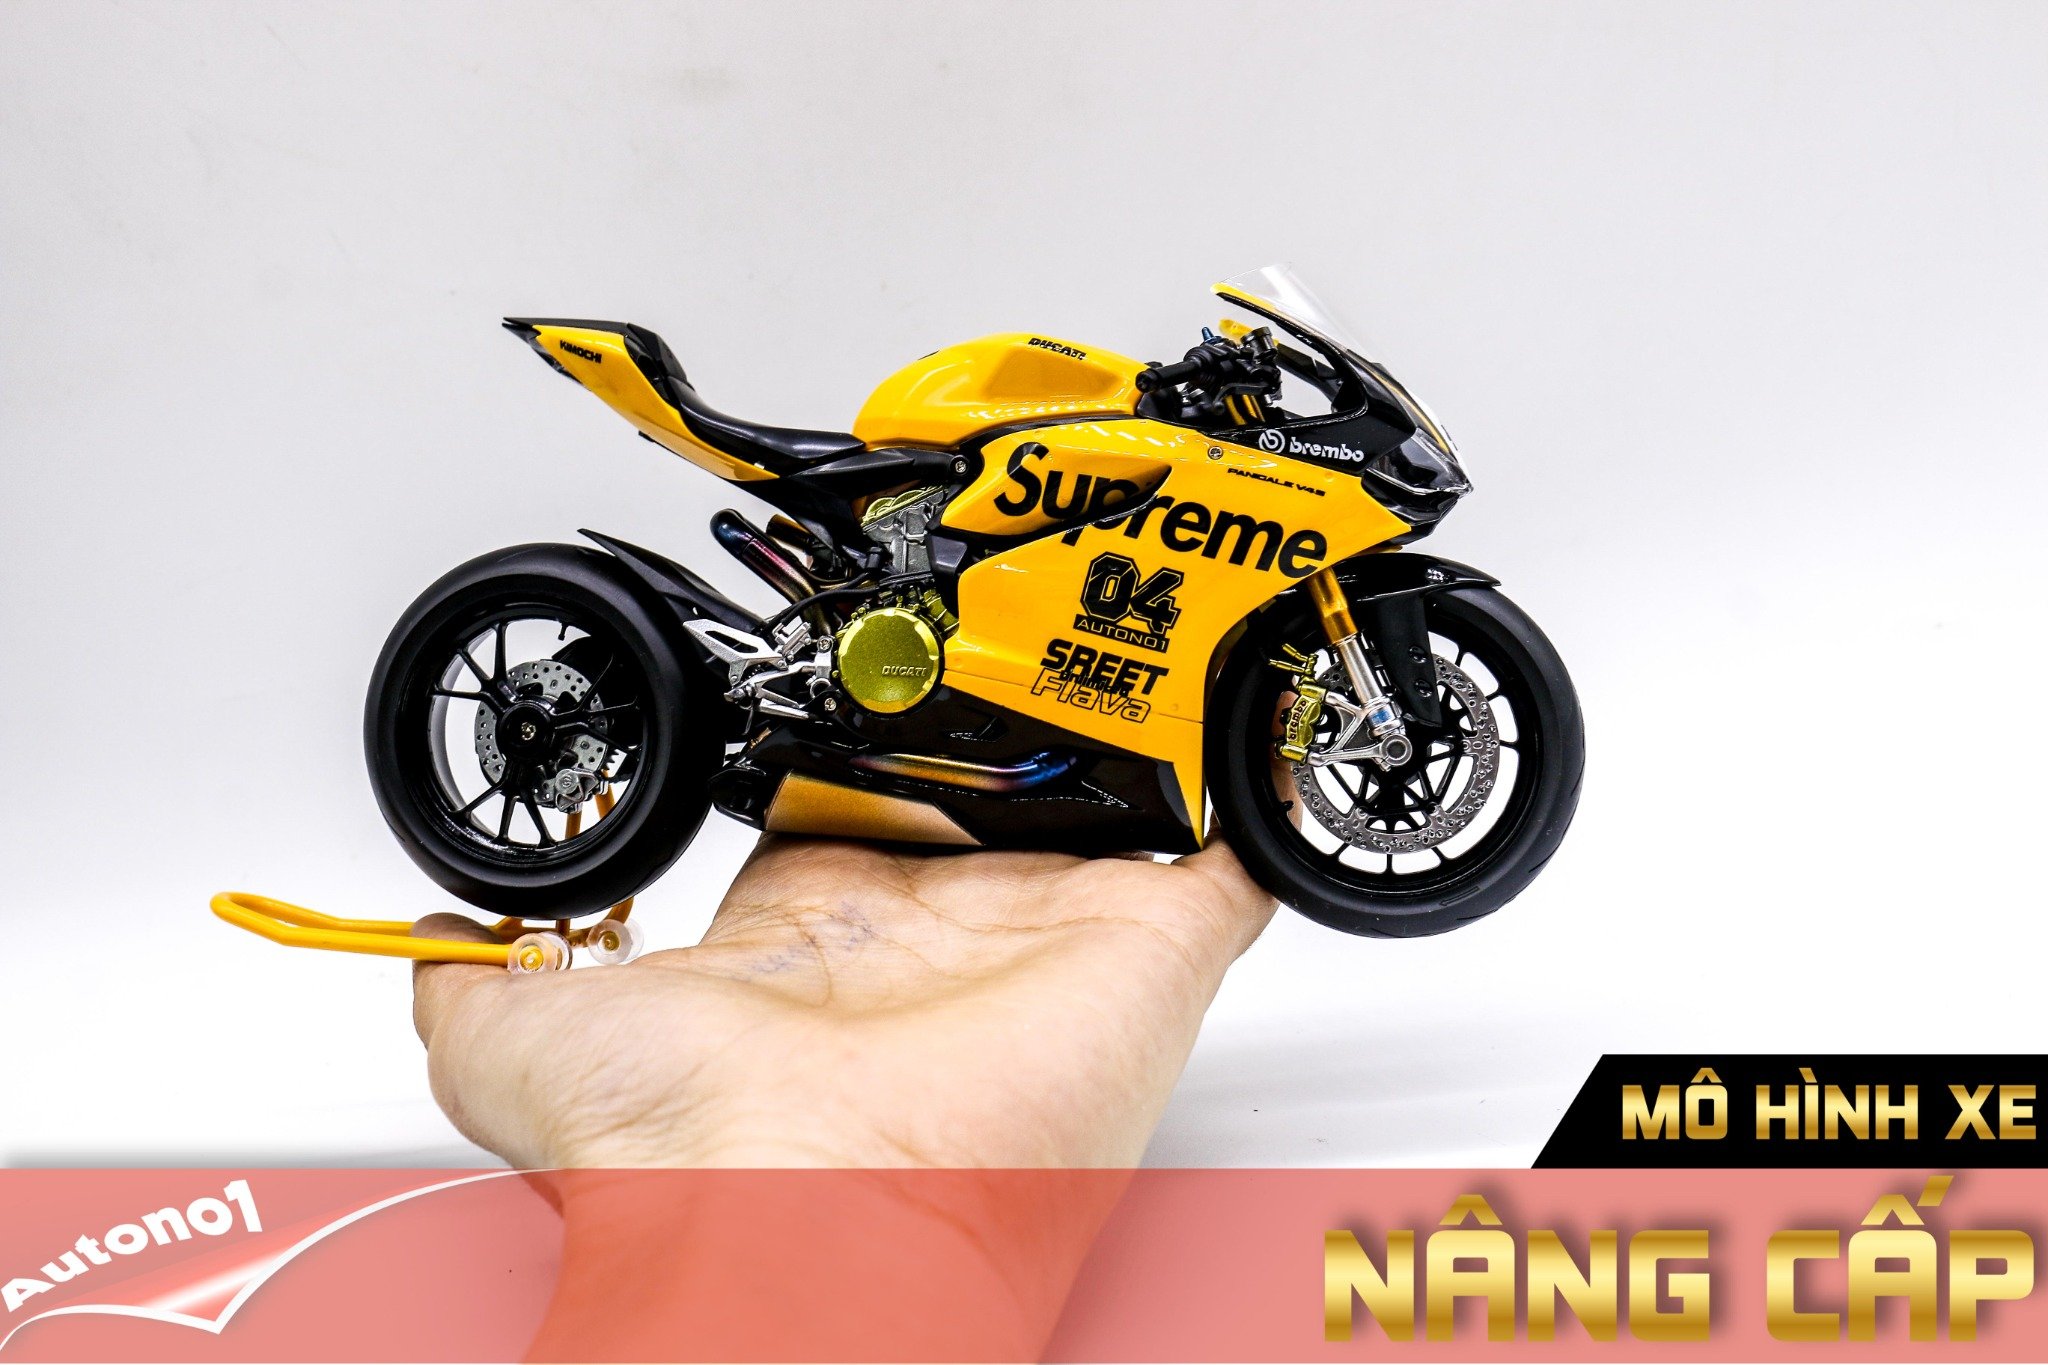  Mô hình xe cao cấp Ducati 1199 Supreme Yellow Tỉ Lệ 1:12 Tamiya D126 